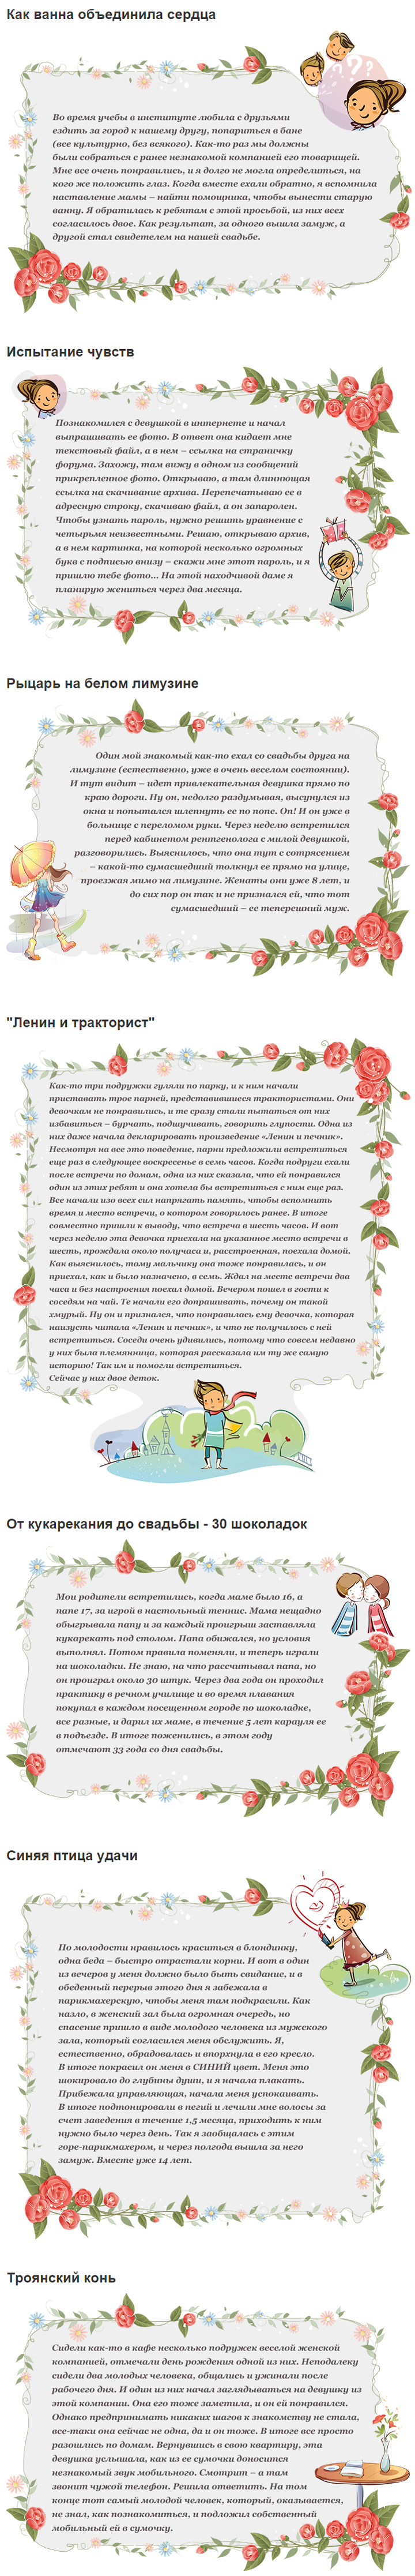 Пример инфографики для цветочного интернет-магазина